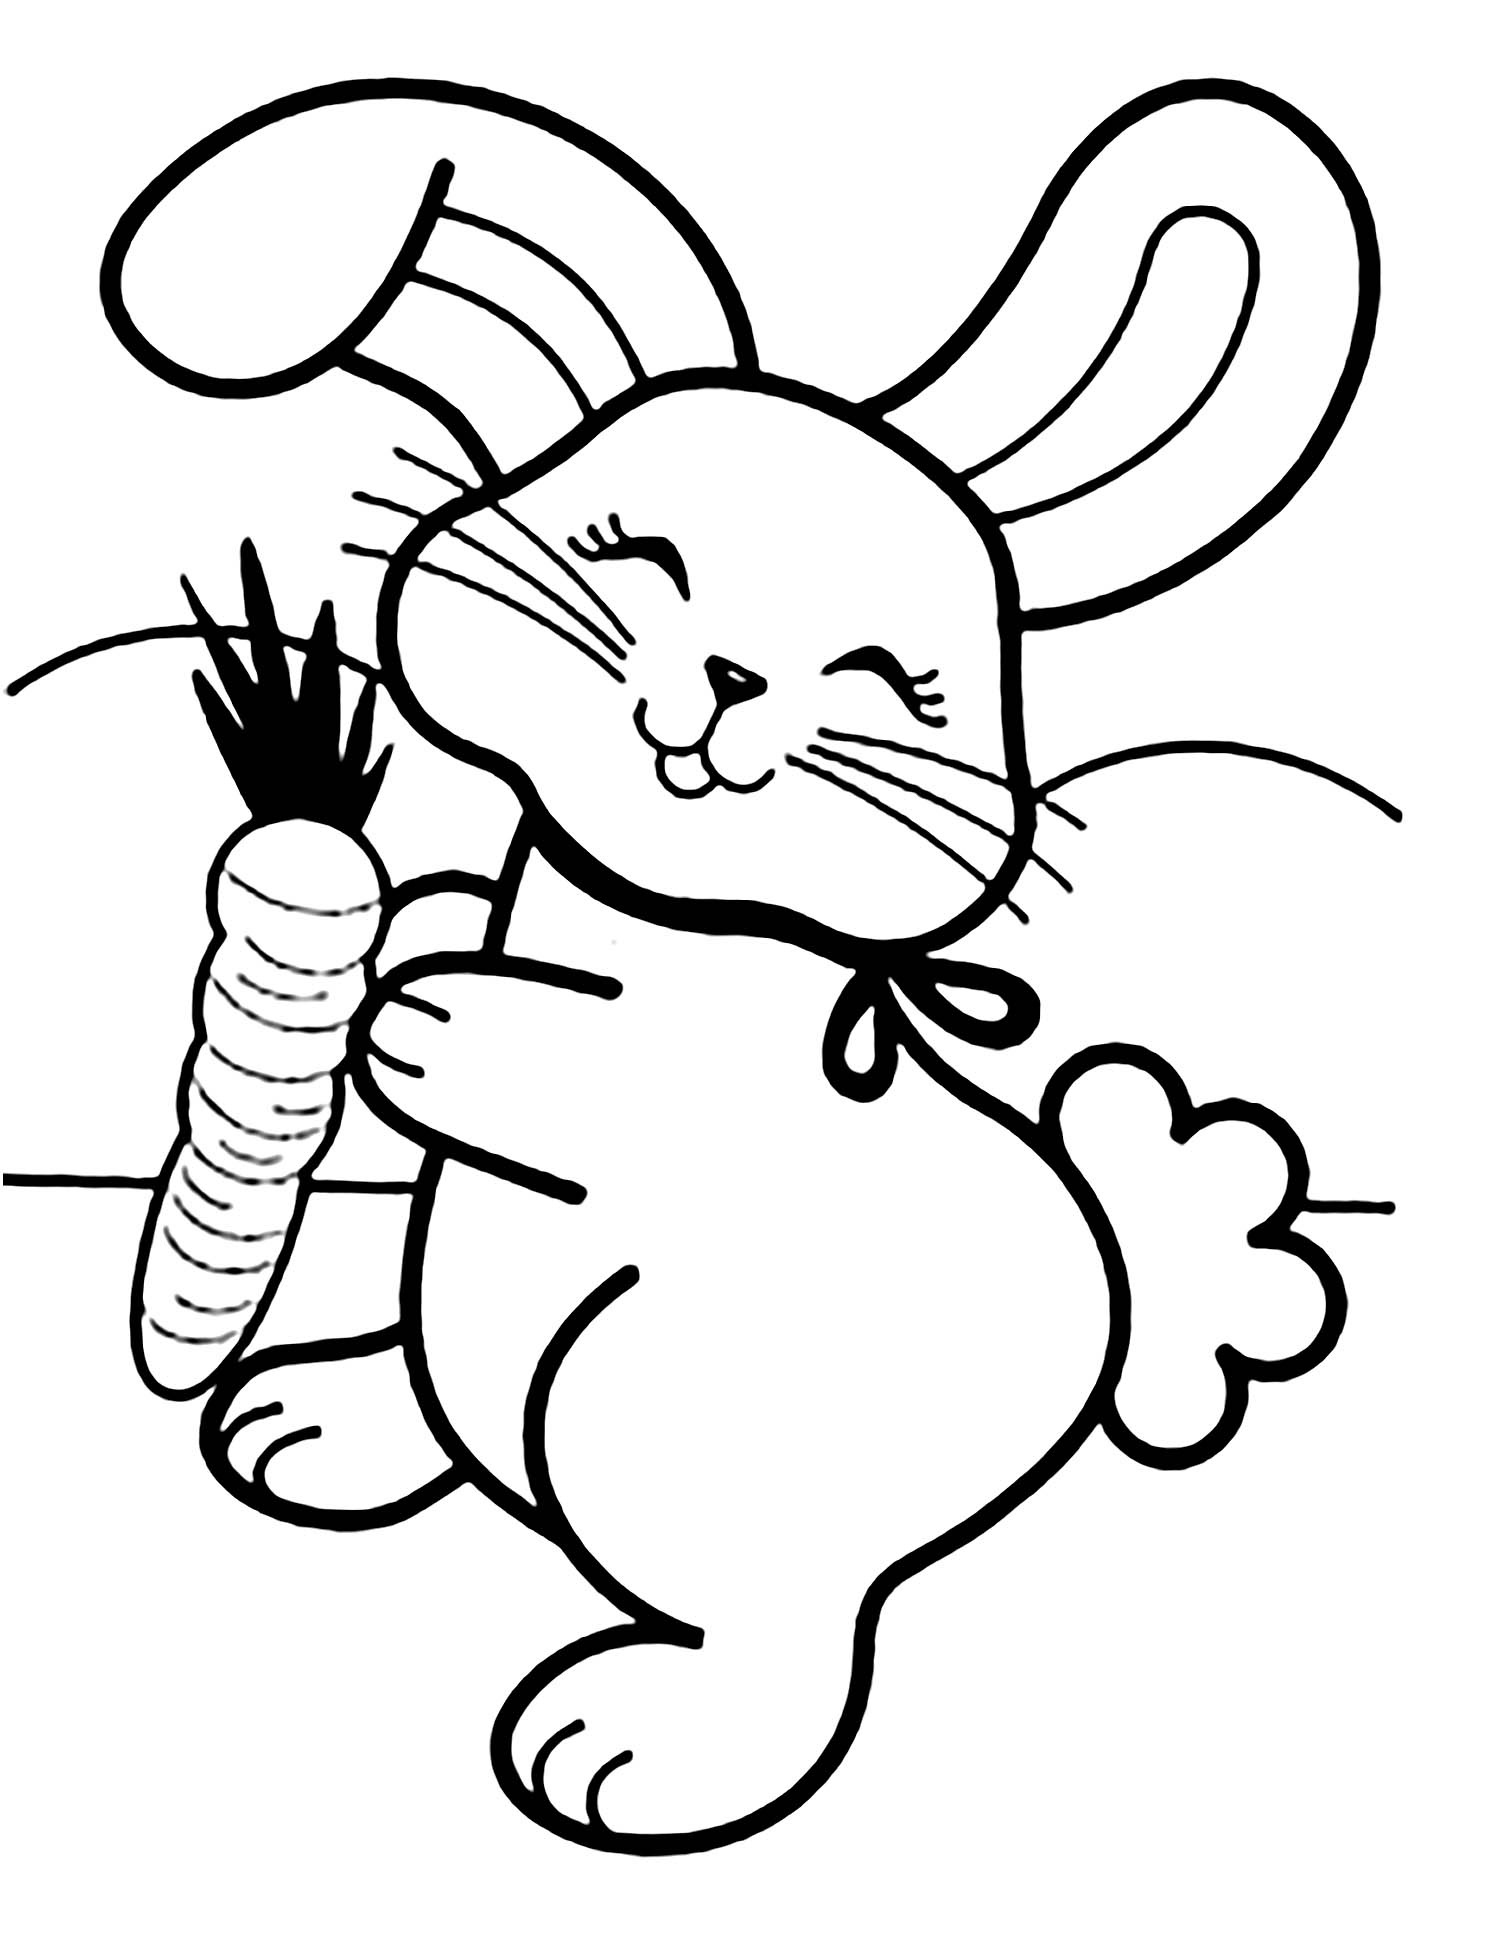 Tranh tô màu chú thỏ vui vẻ cầm củ cà rốt